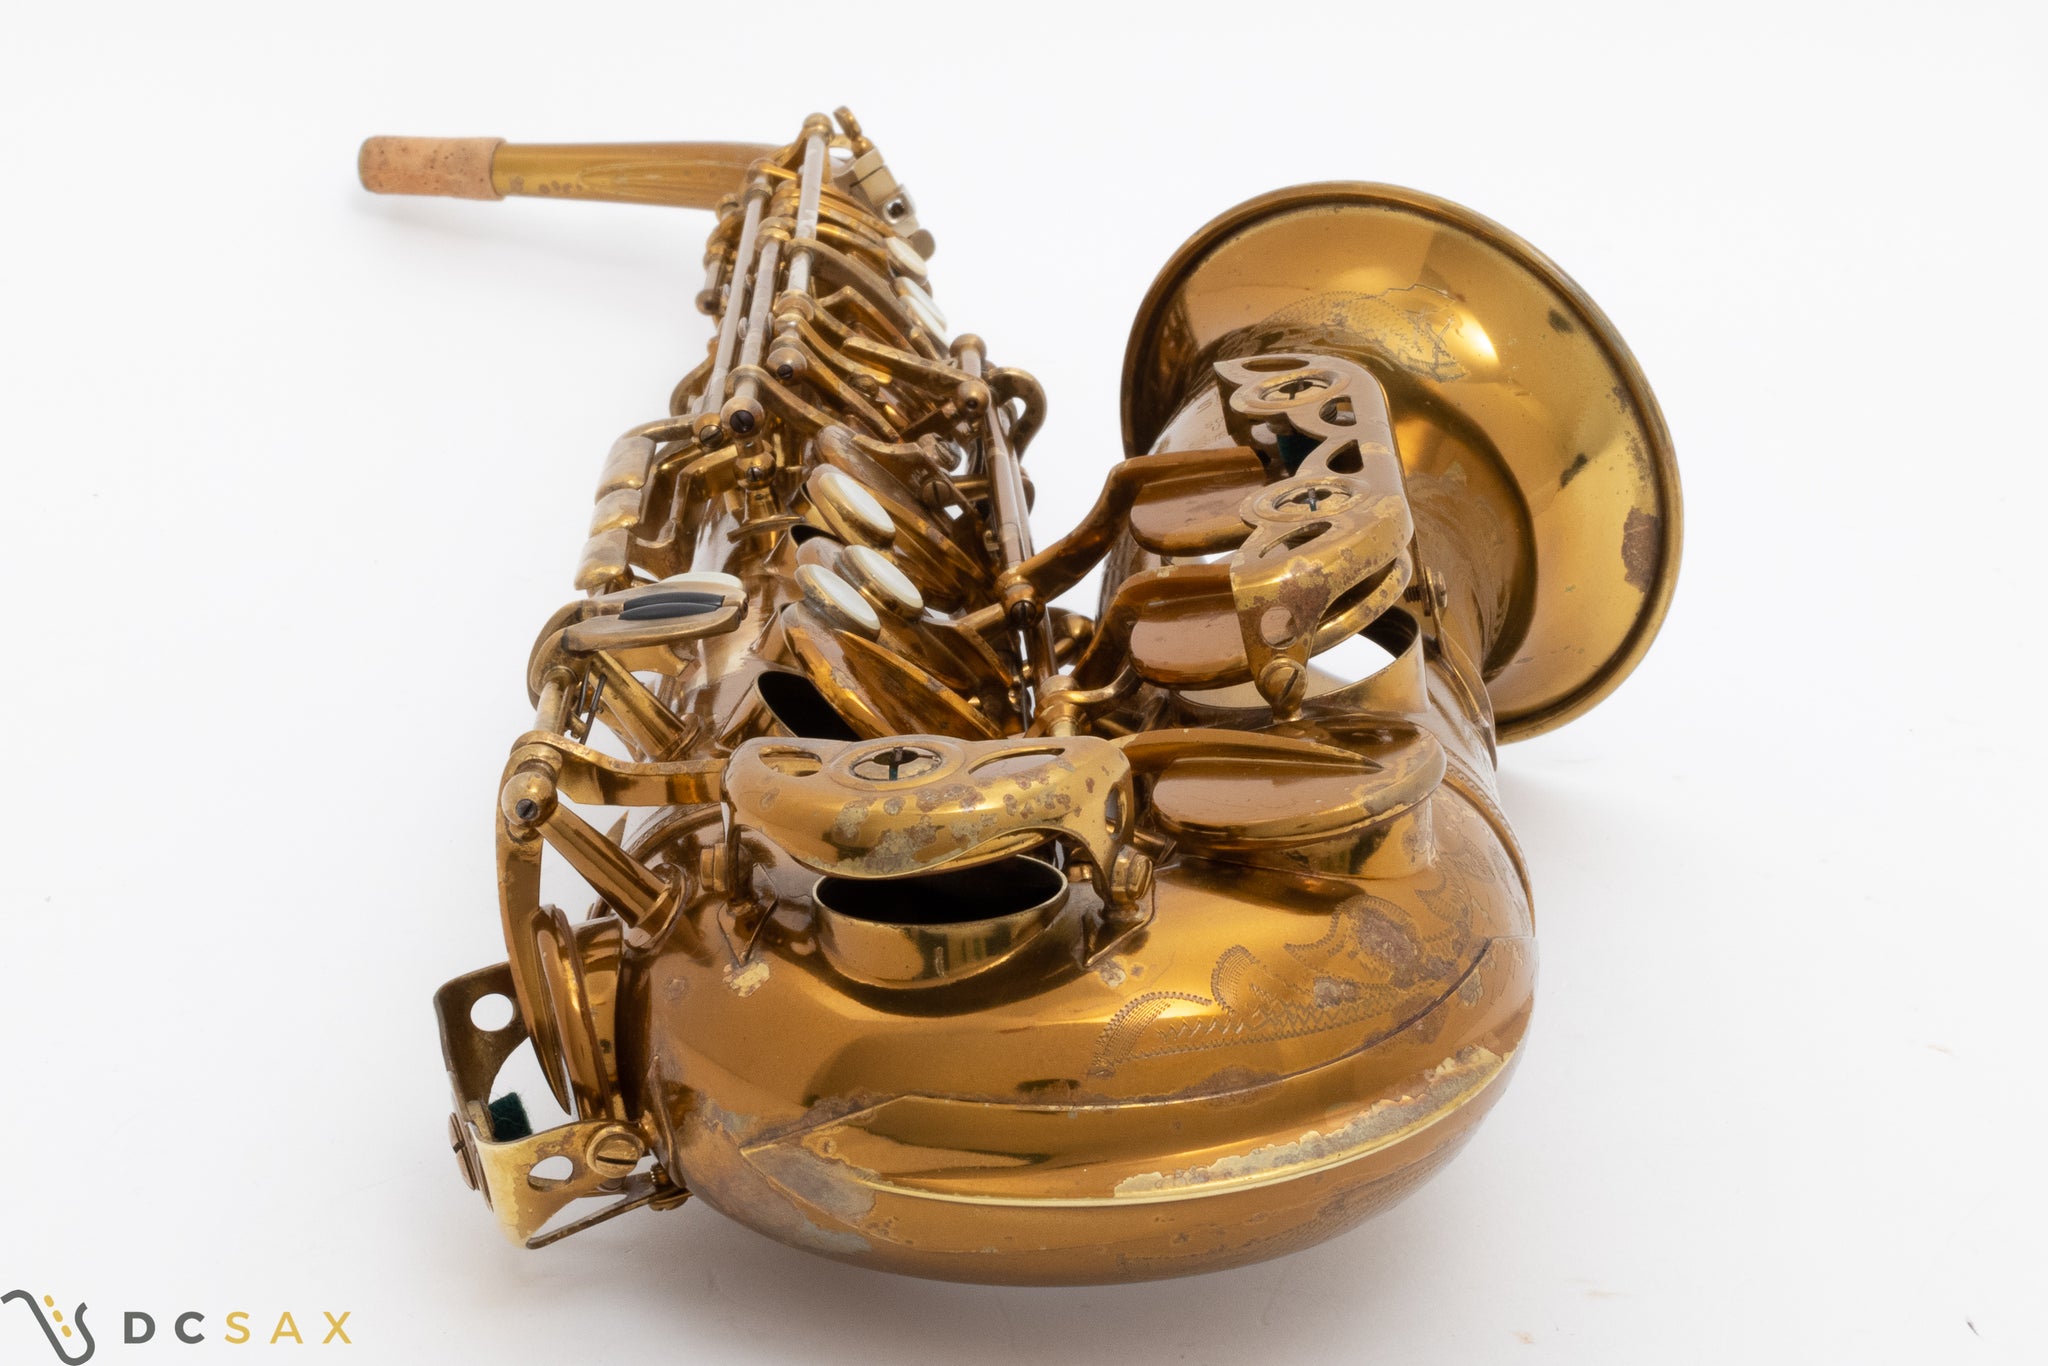 55,xxx Selmer Super Balanced Action Alto Saxophone, 97% Original Lacquer, Fresh Overhaul, Video